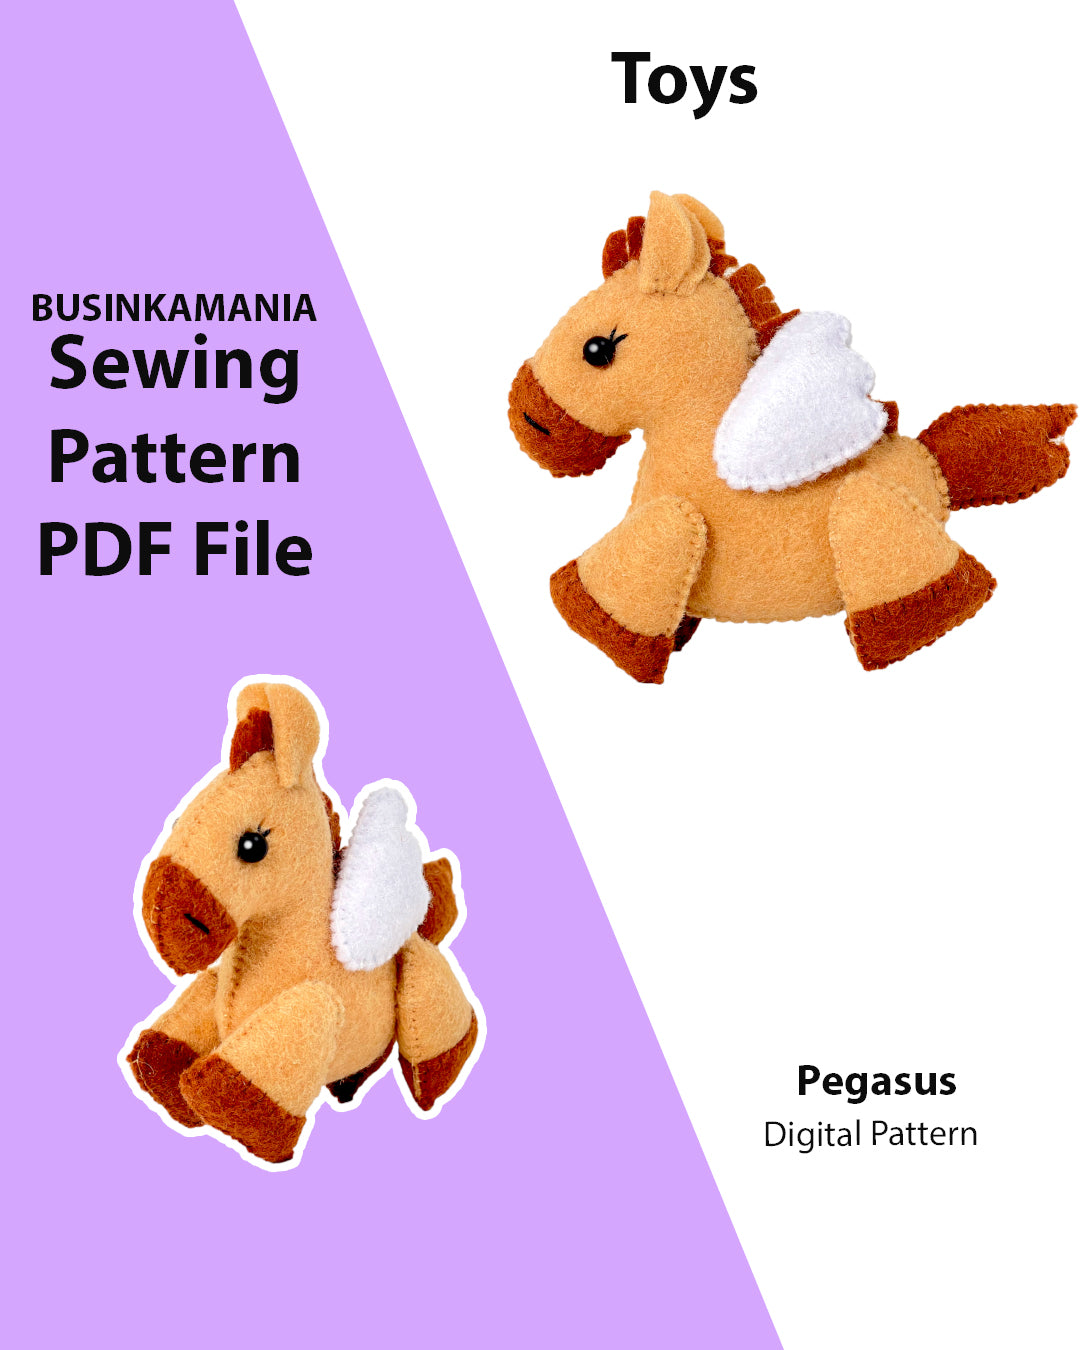 Pegasus Felt Toy Sewing Pattern